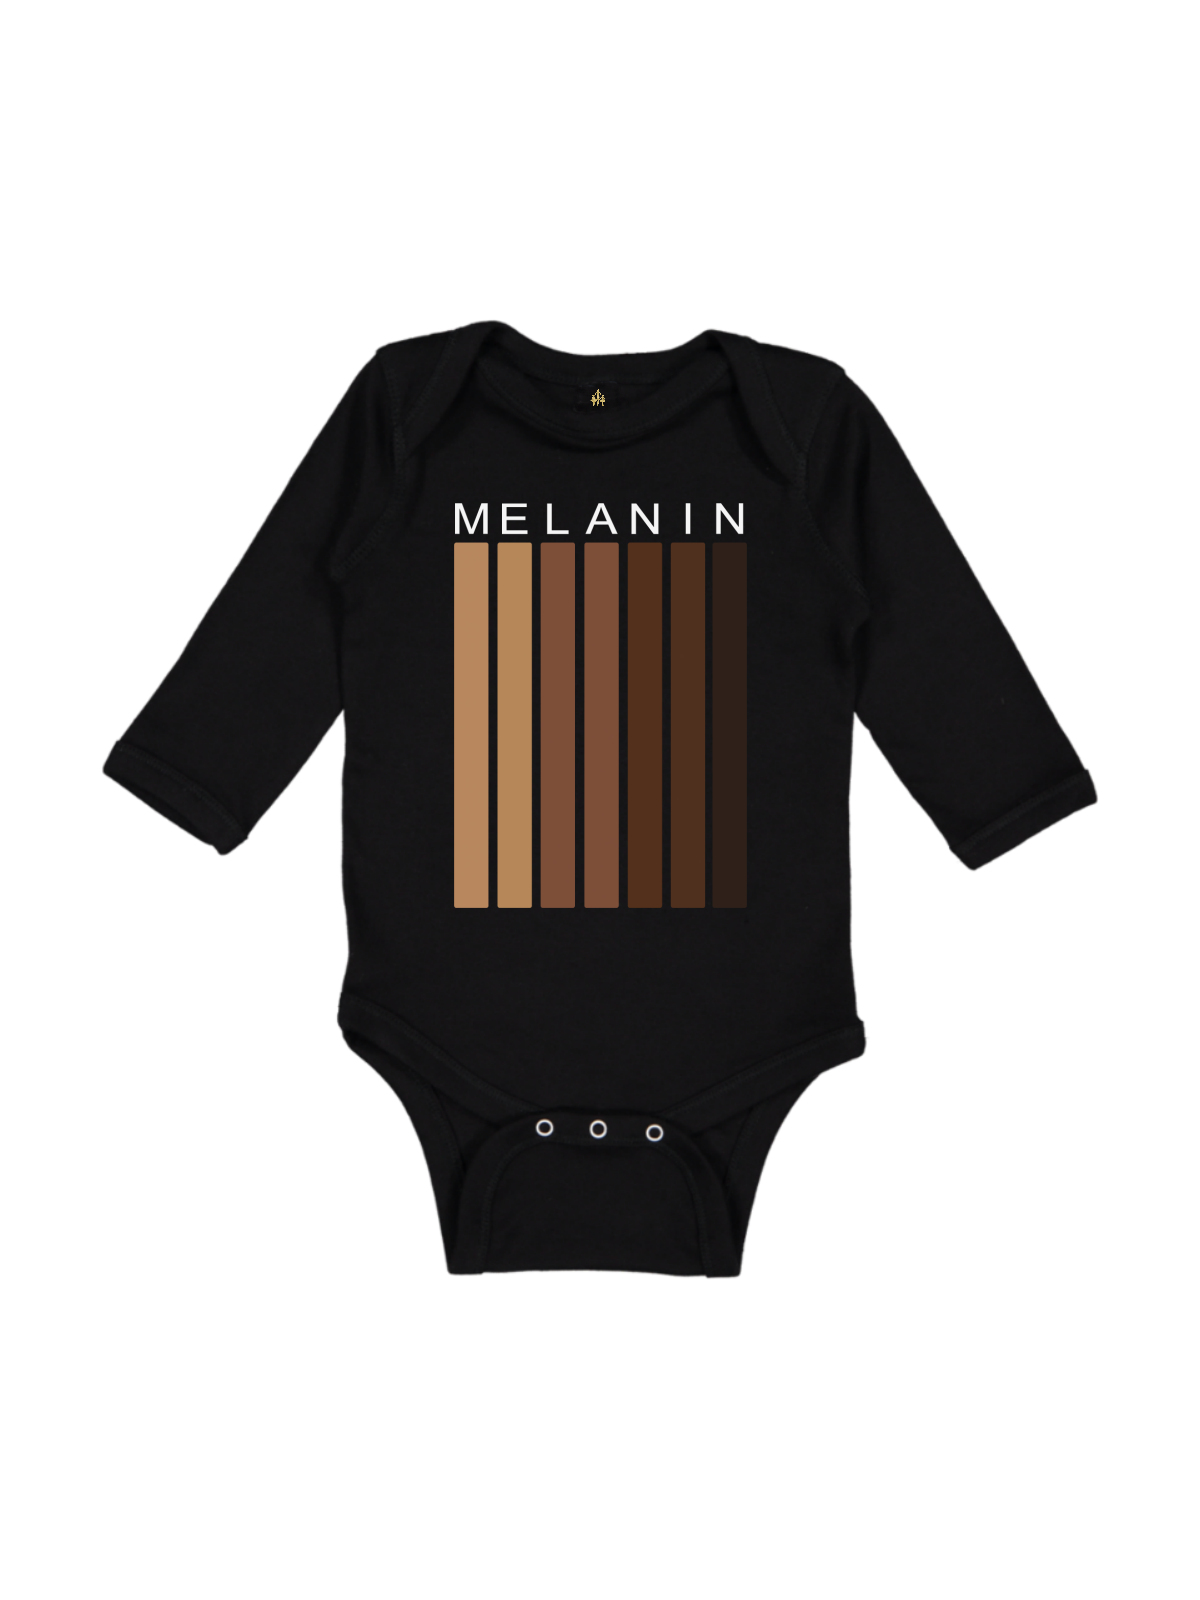 Shades of Melanin Black History Baby Bodysuit